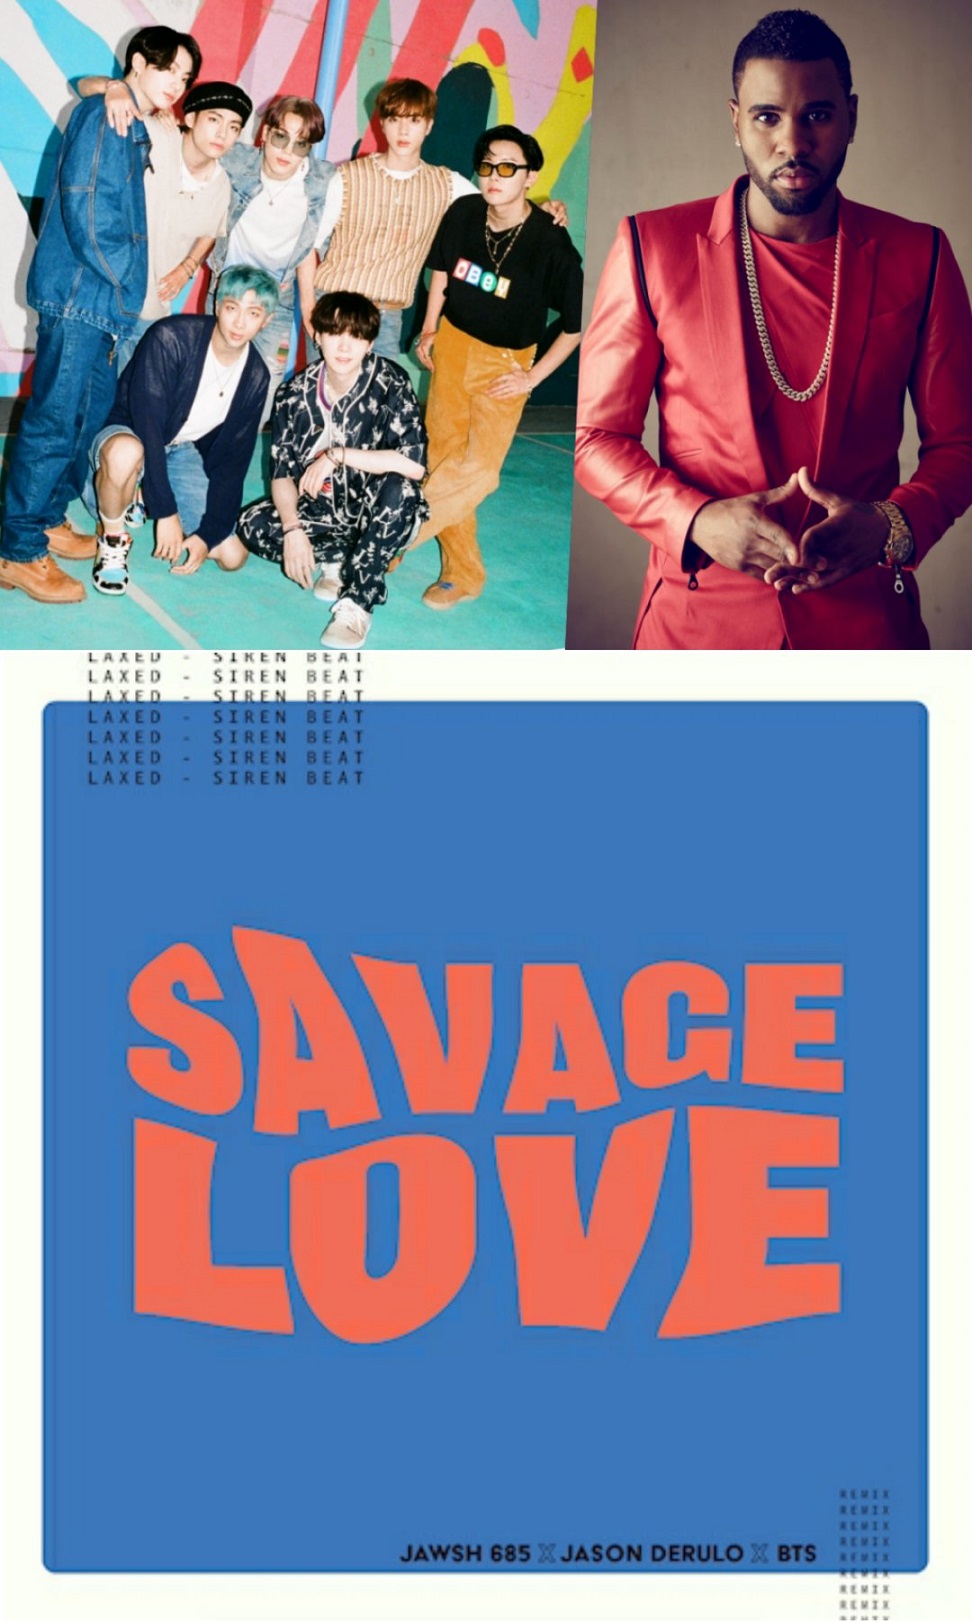 Bts savage. Savage Love BTS. Jawsh 685, Jason Derulo, BTS. Savage Love Jason Derulo BTS. Savage Love Jawsh 685 Jason Derulo BTS.